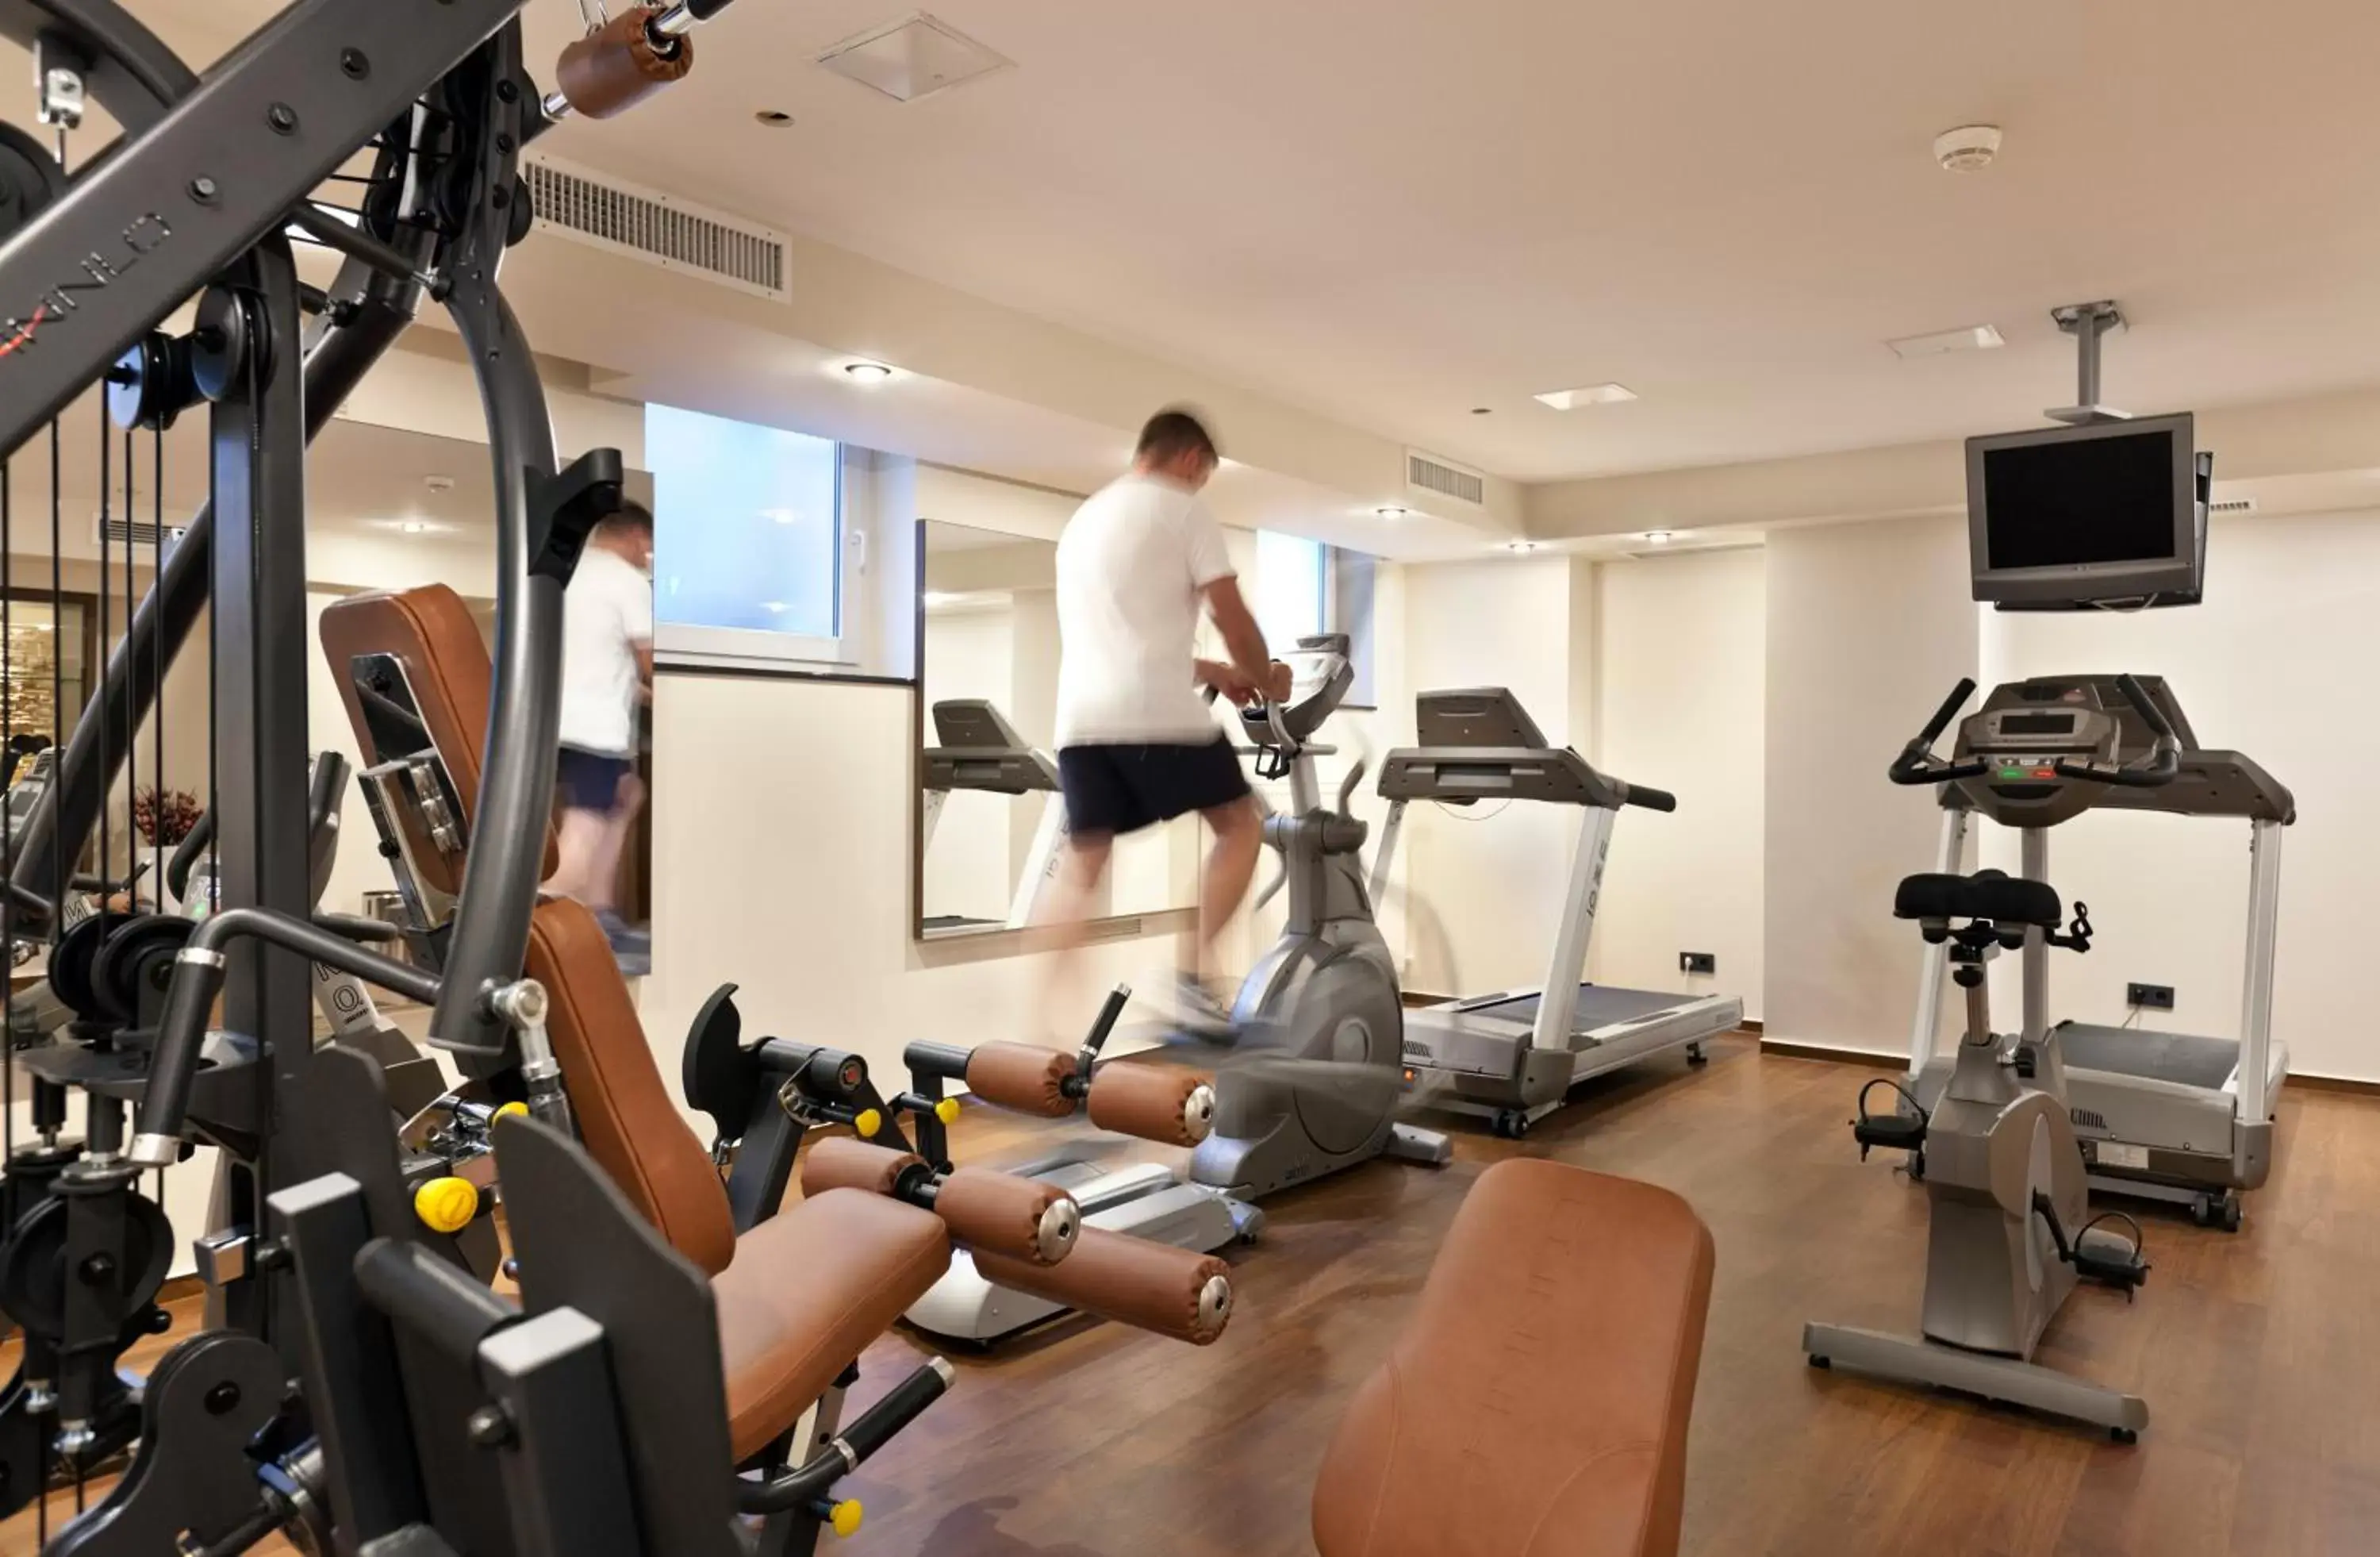 Fitness centre/facilities, Fitness Center/Facilities in Flemings Hotel Frankfurt Main-Riverside